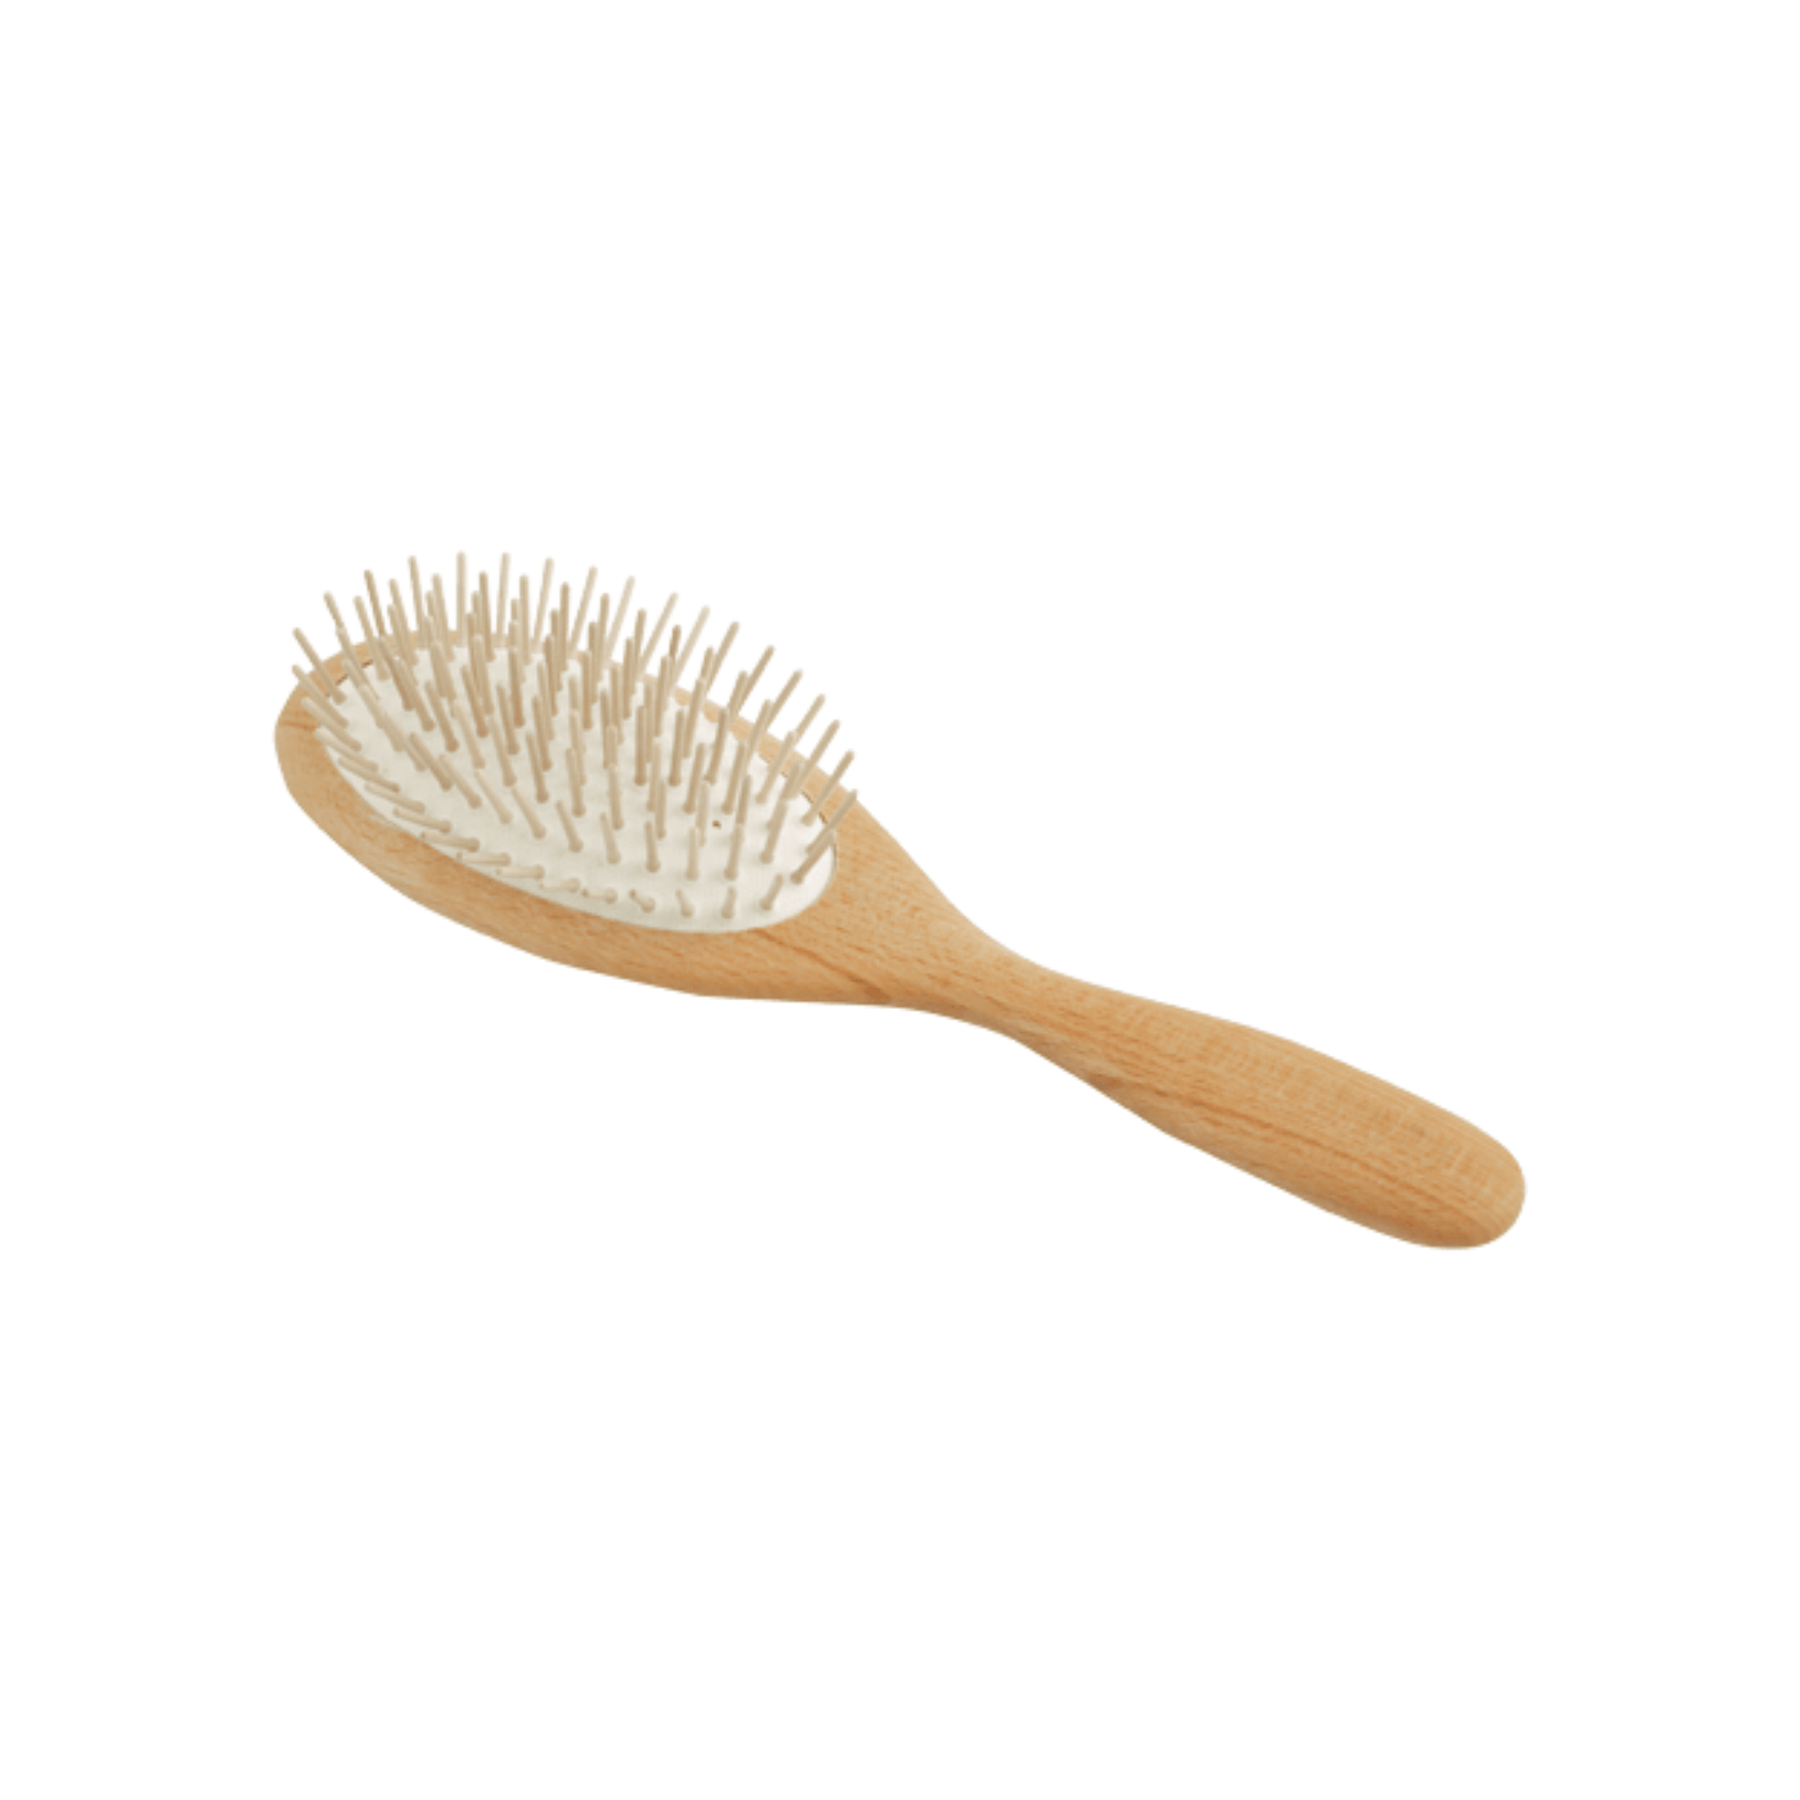 Wood Hair Brush - LARGE